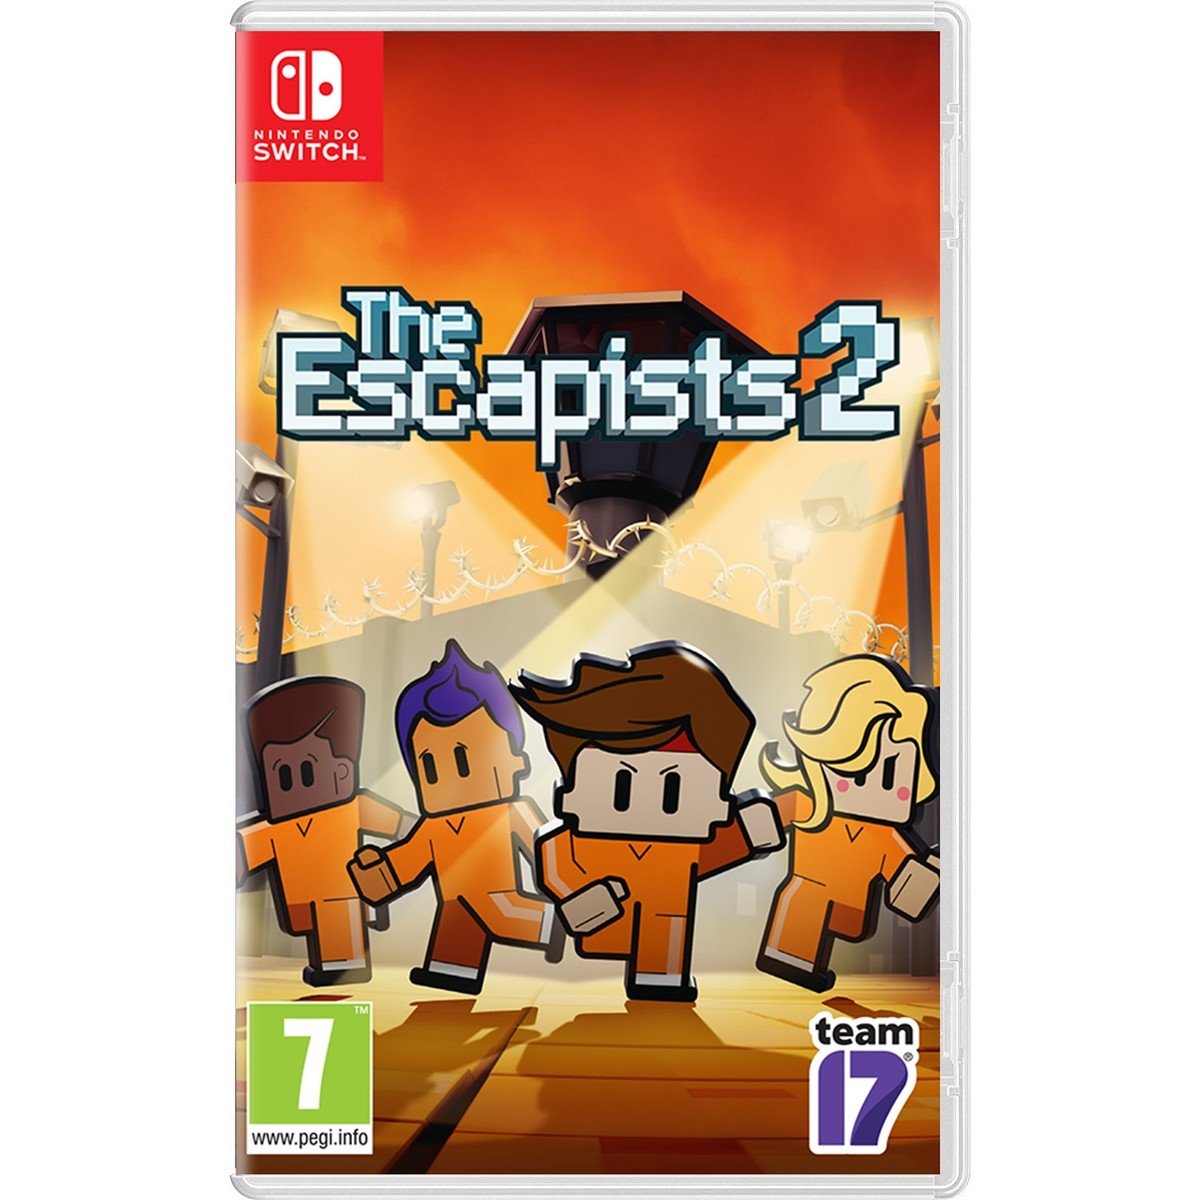 Nintendo Switch The Escapist 2